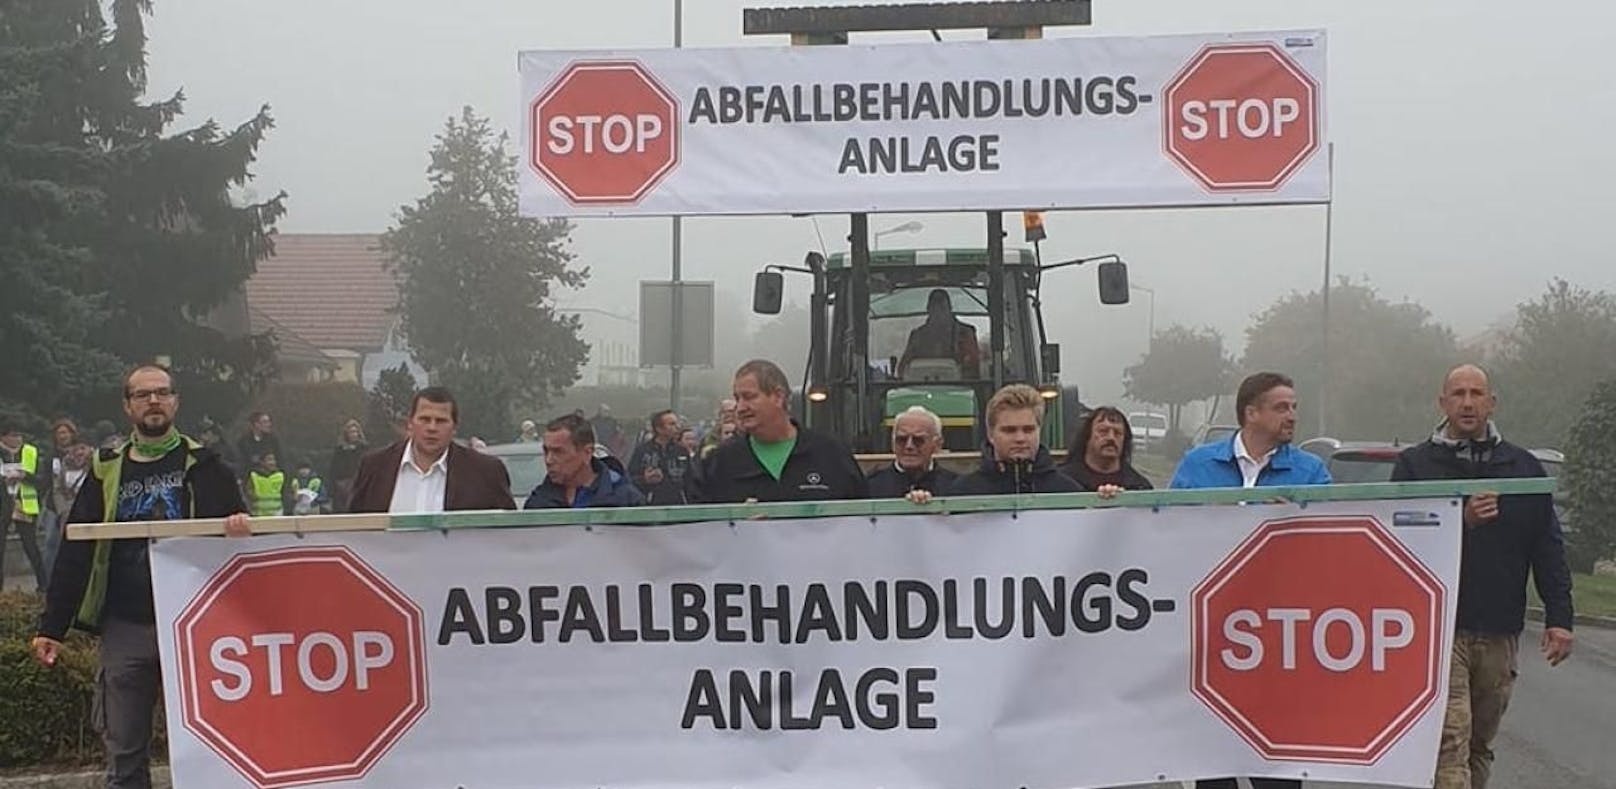 Demo gegen Abfall-Anlage in Theresienfeld